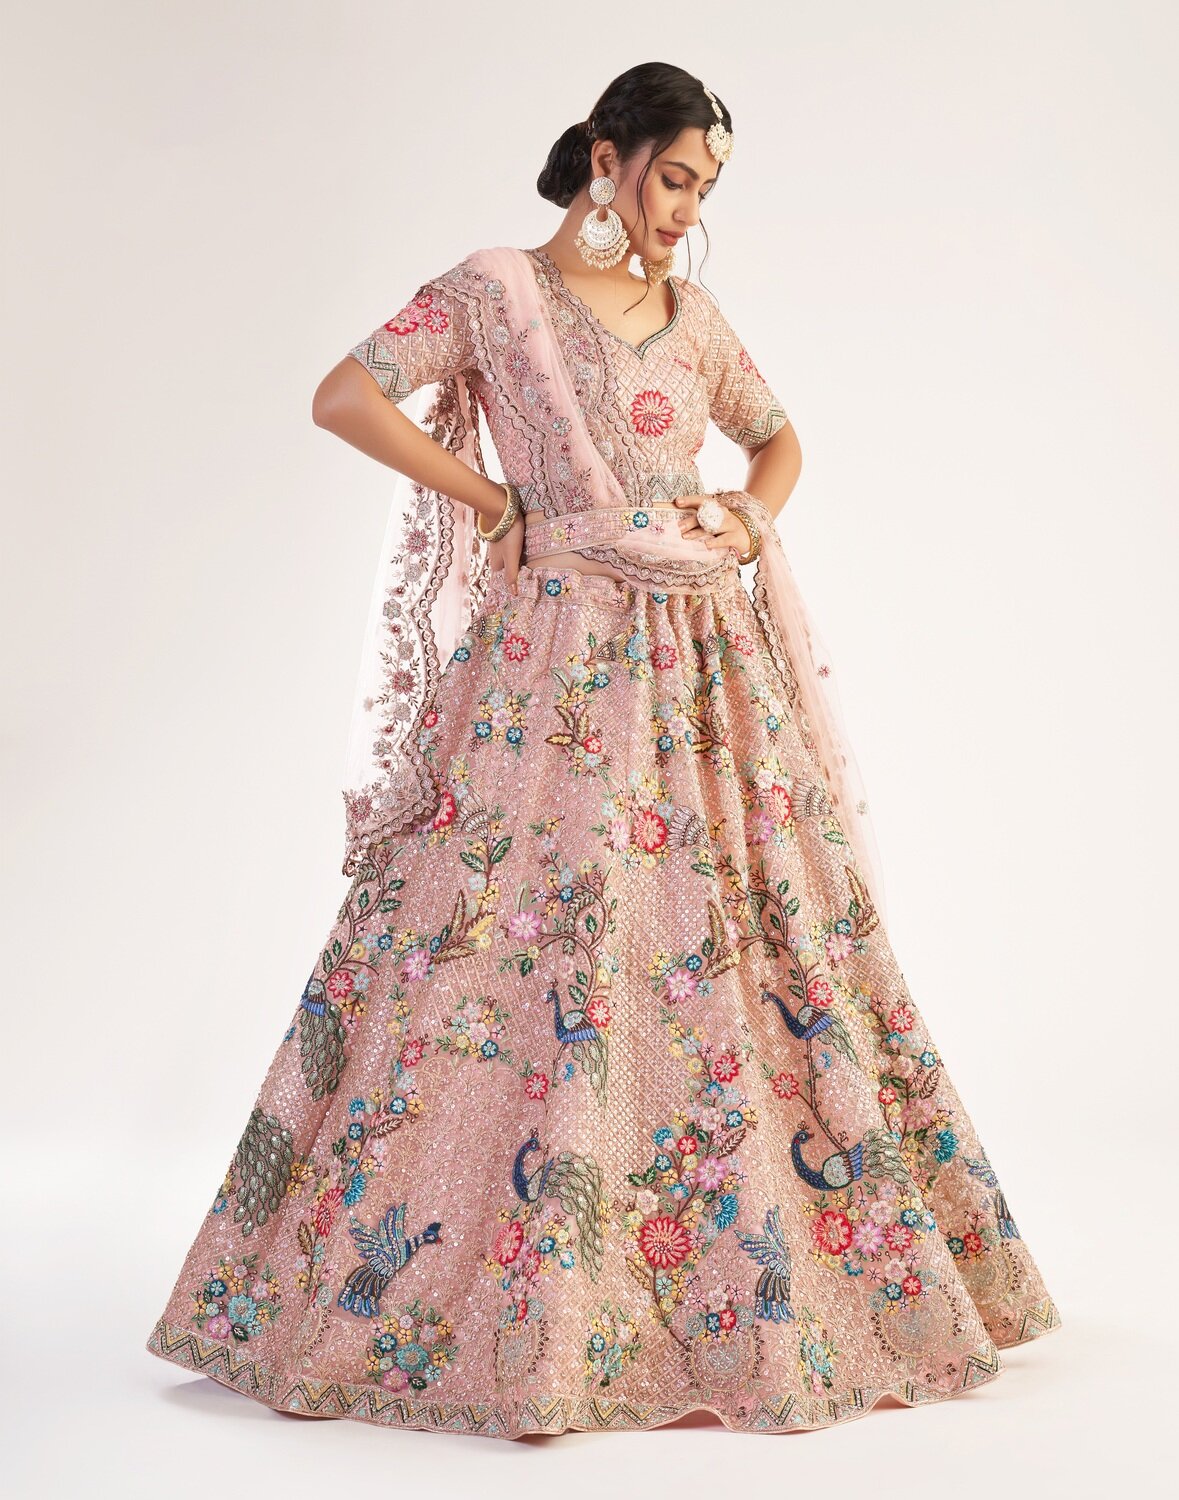 Exotic Design Bridal Premium Lehenga Choli In Pinkish Peach